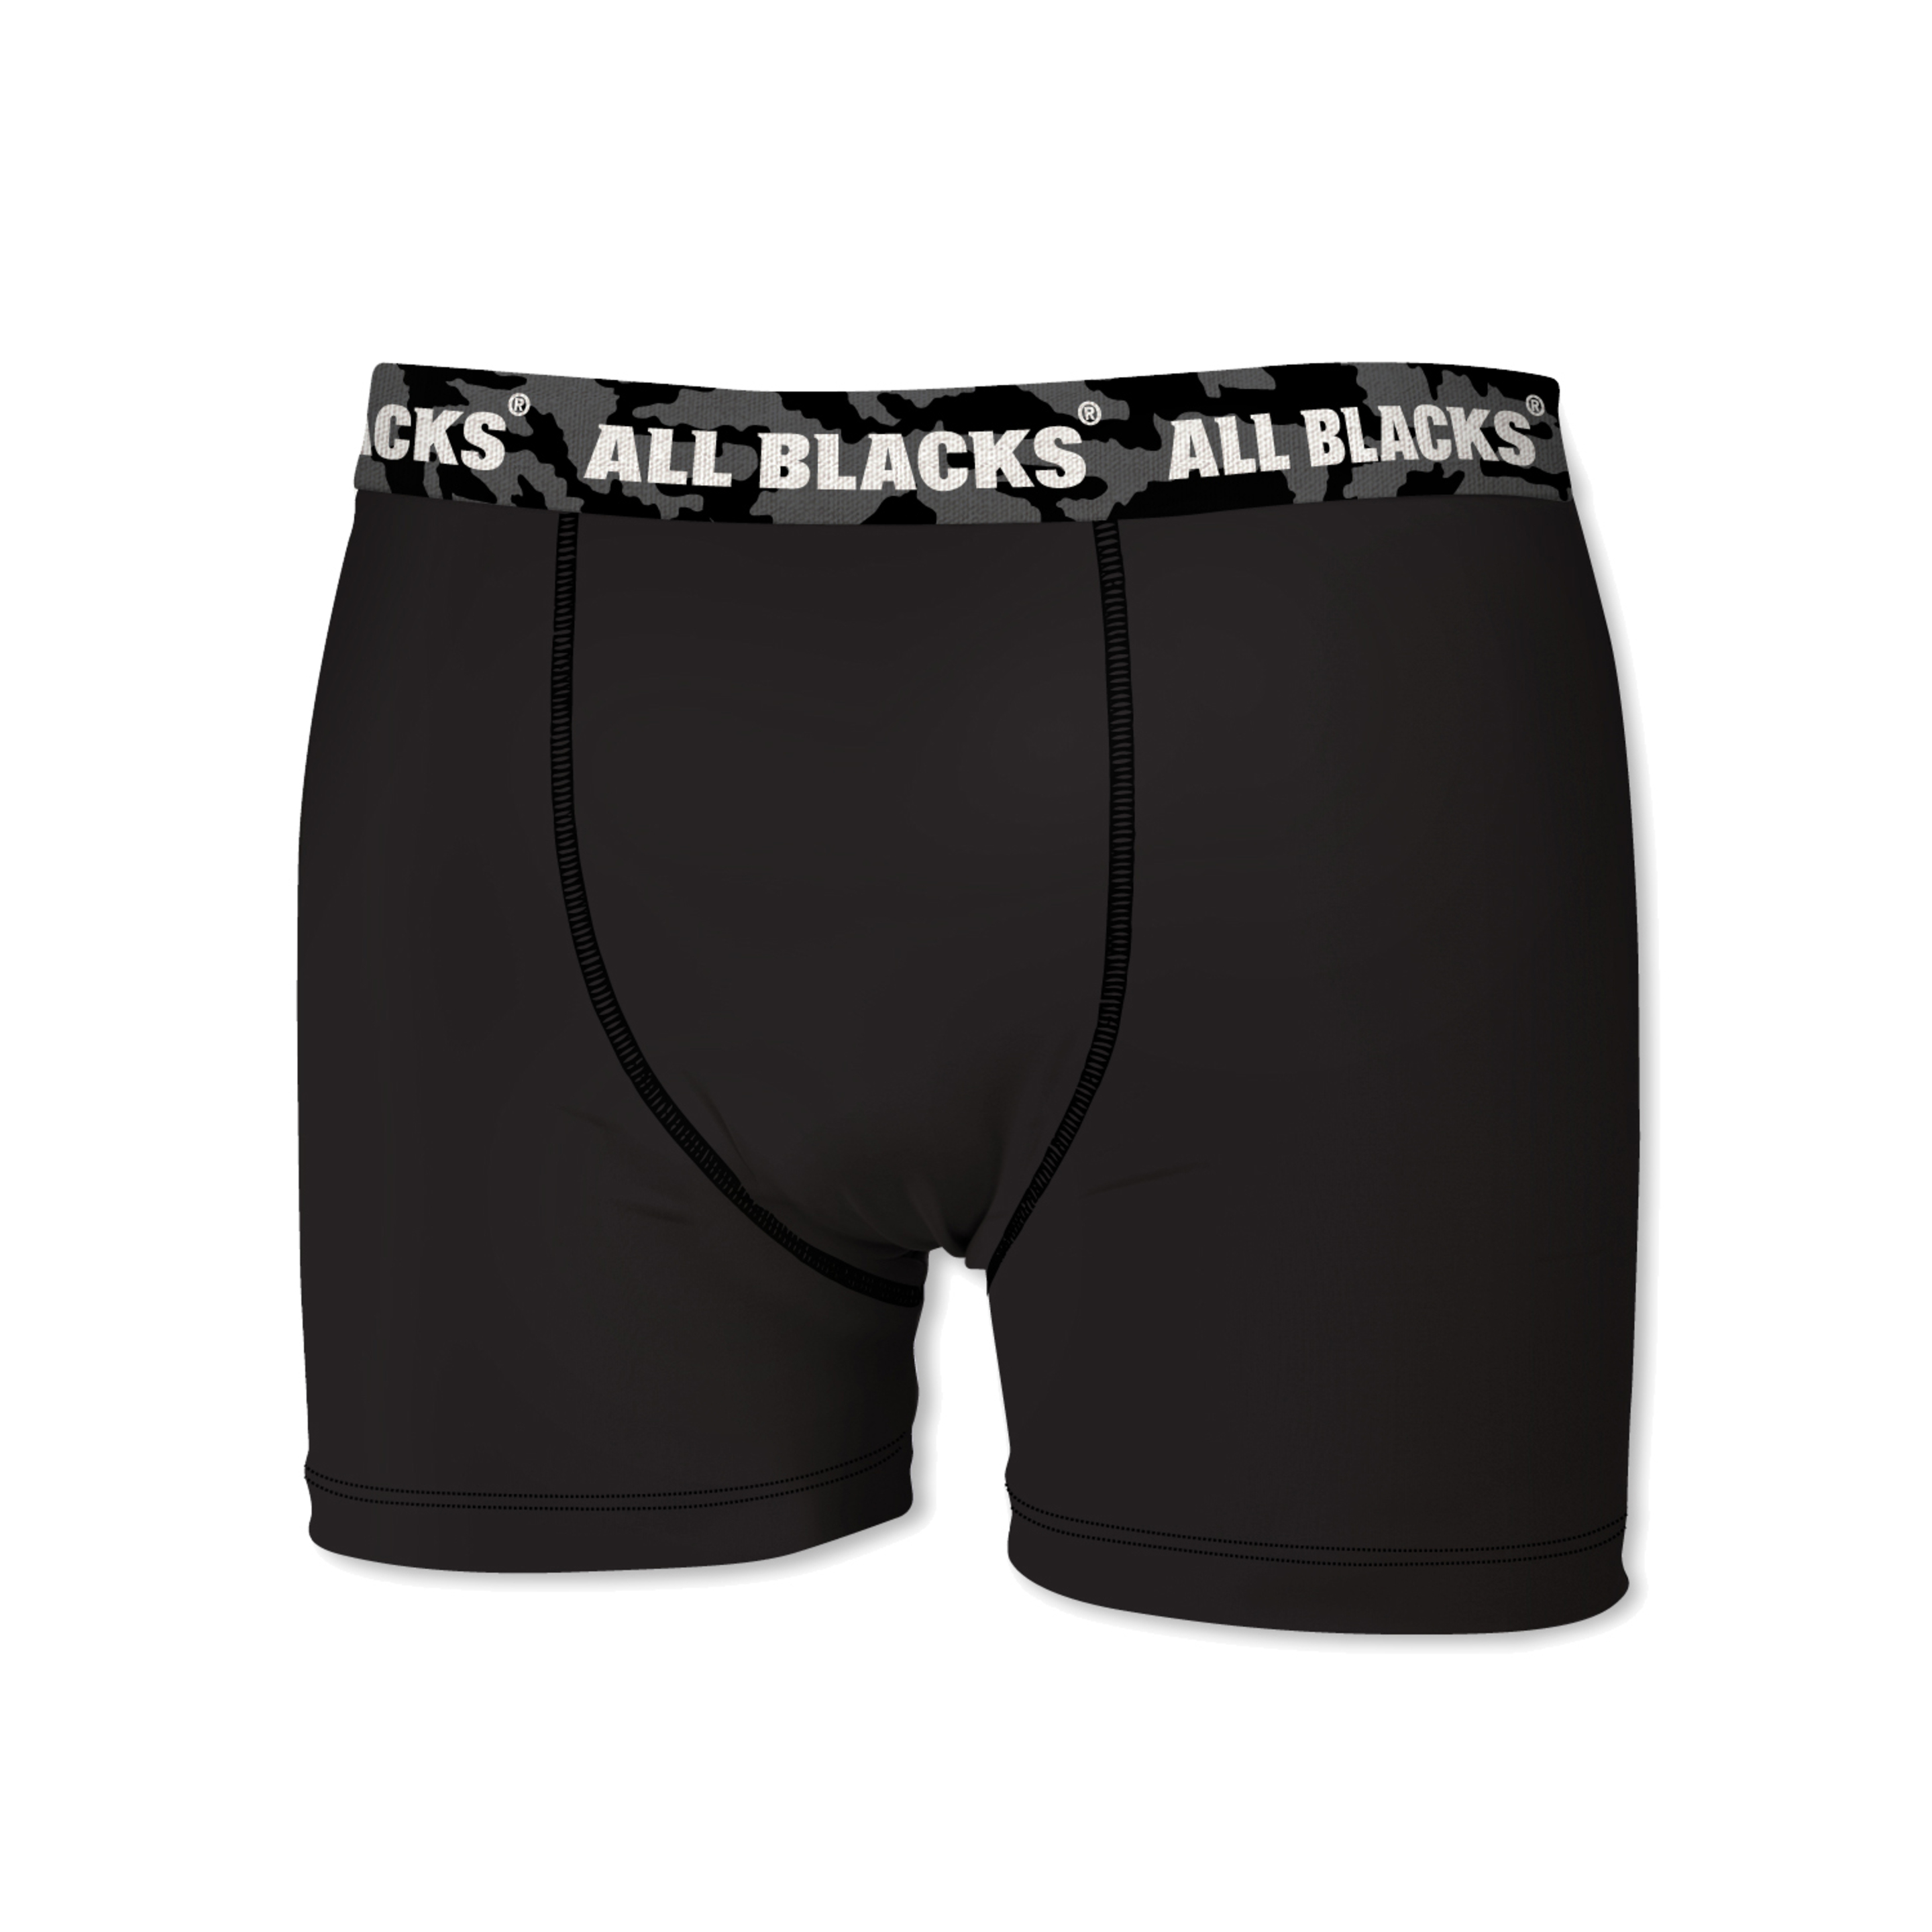 Calzoncillos All Blacks - Negro - Casual Hombre  MKP